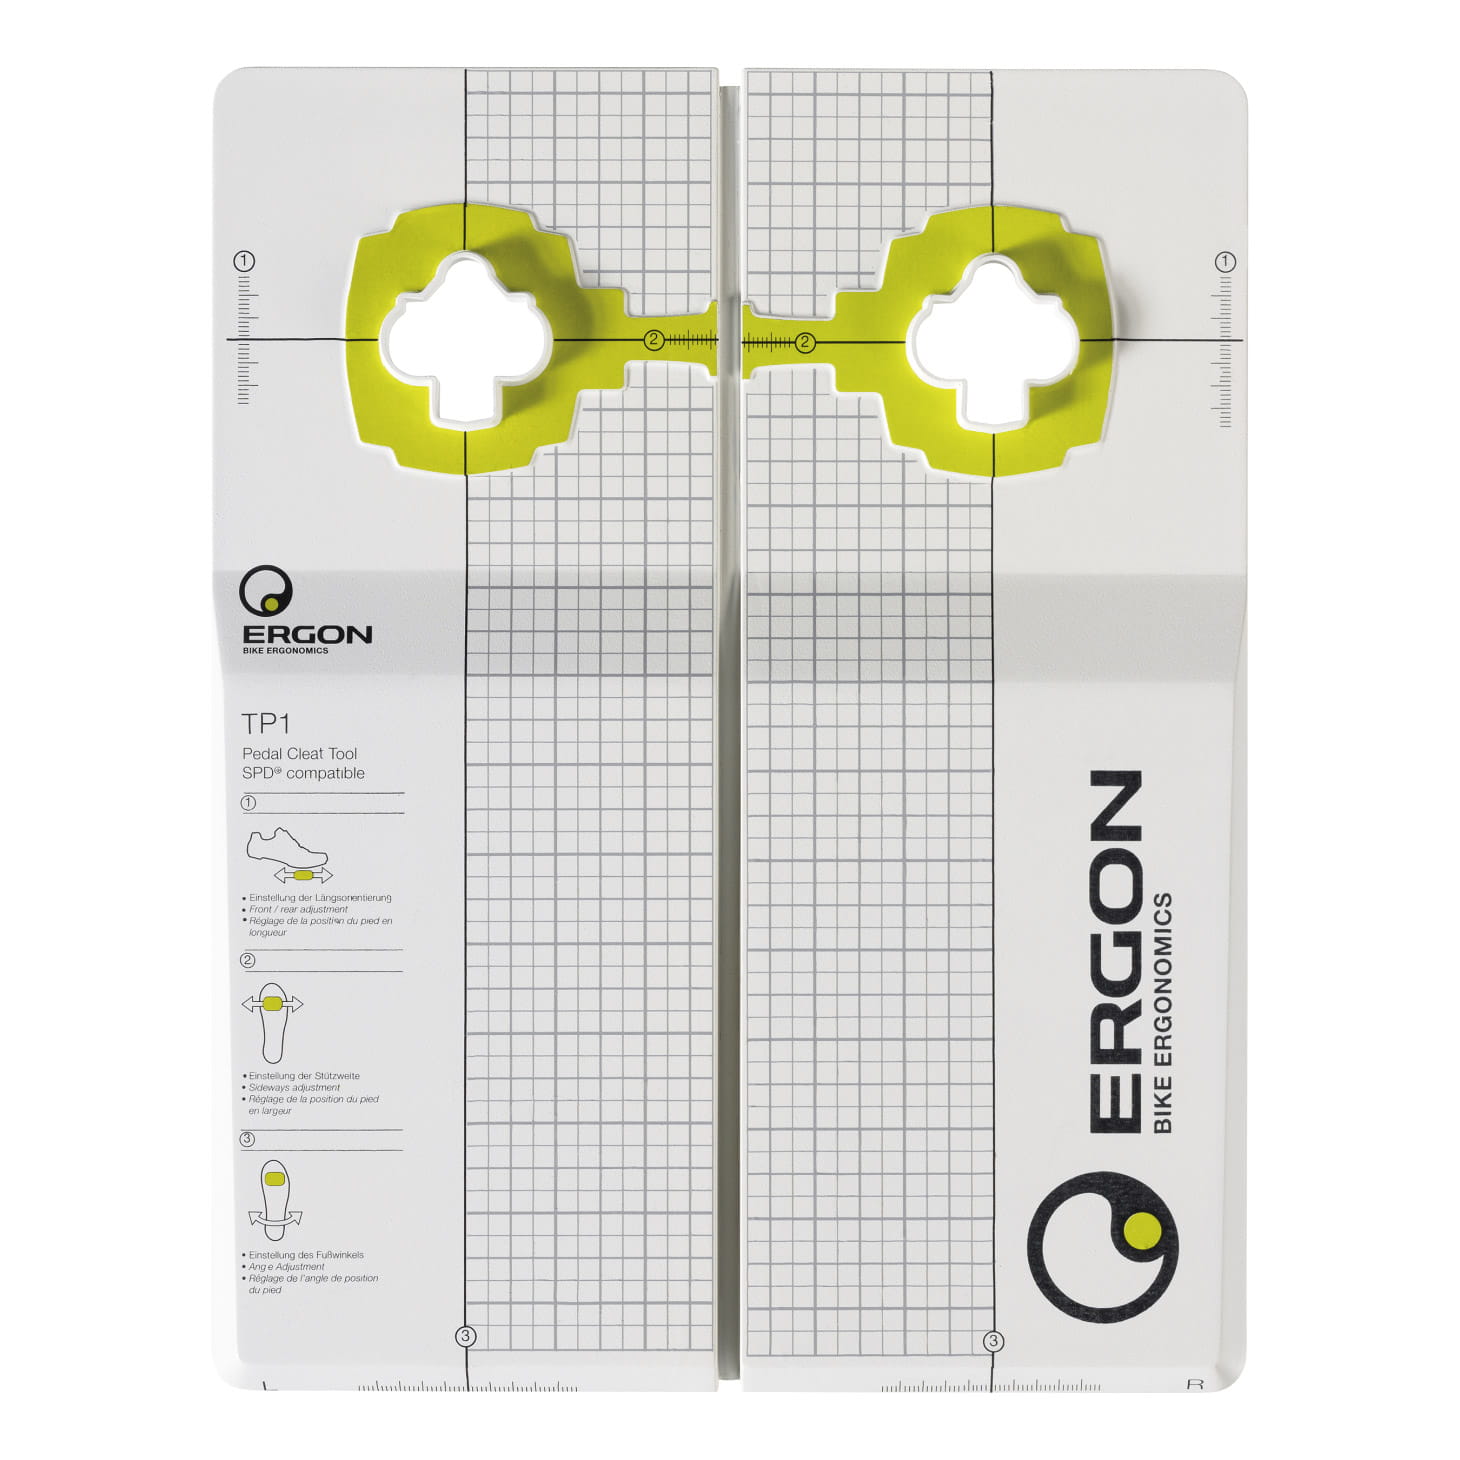 Ergon TP1 Pedal Cleat Tool Einstellwerkzeug für Klickpedale / Schuhplatten